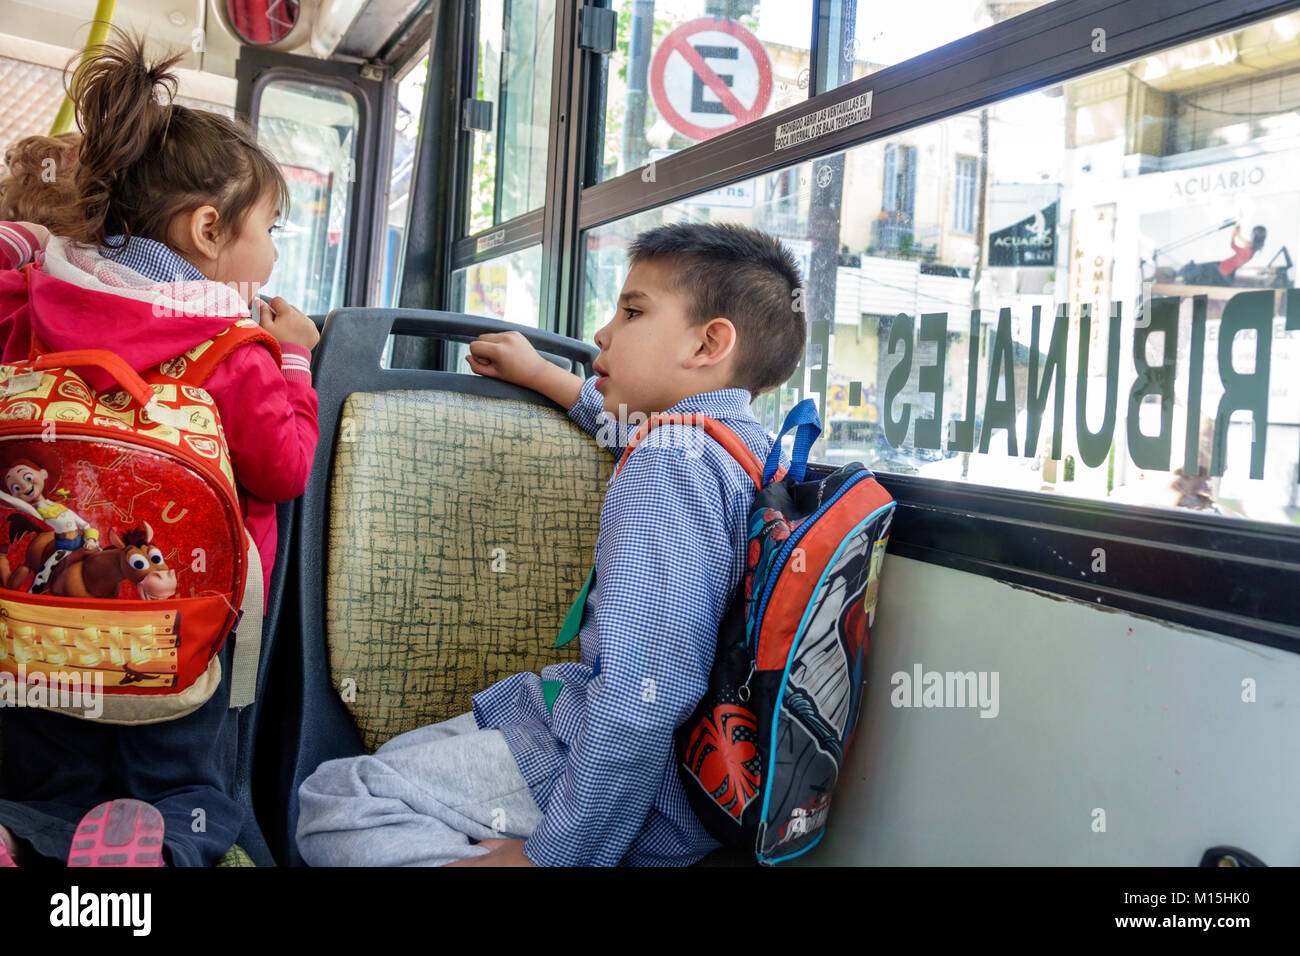 Buenos Aires Argentina,bus,trasporto pubblico,studenti istruzione alunno gioventù,ragazzi,maschio bambini bambini bambini bambini ragazzi giovani ragazzi voi Foto Stock